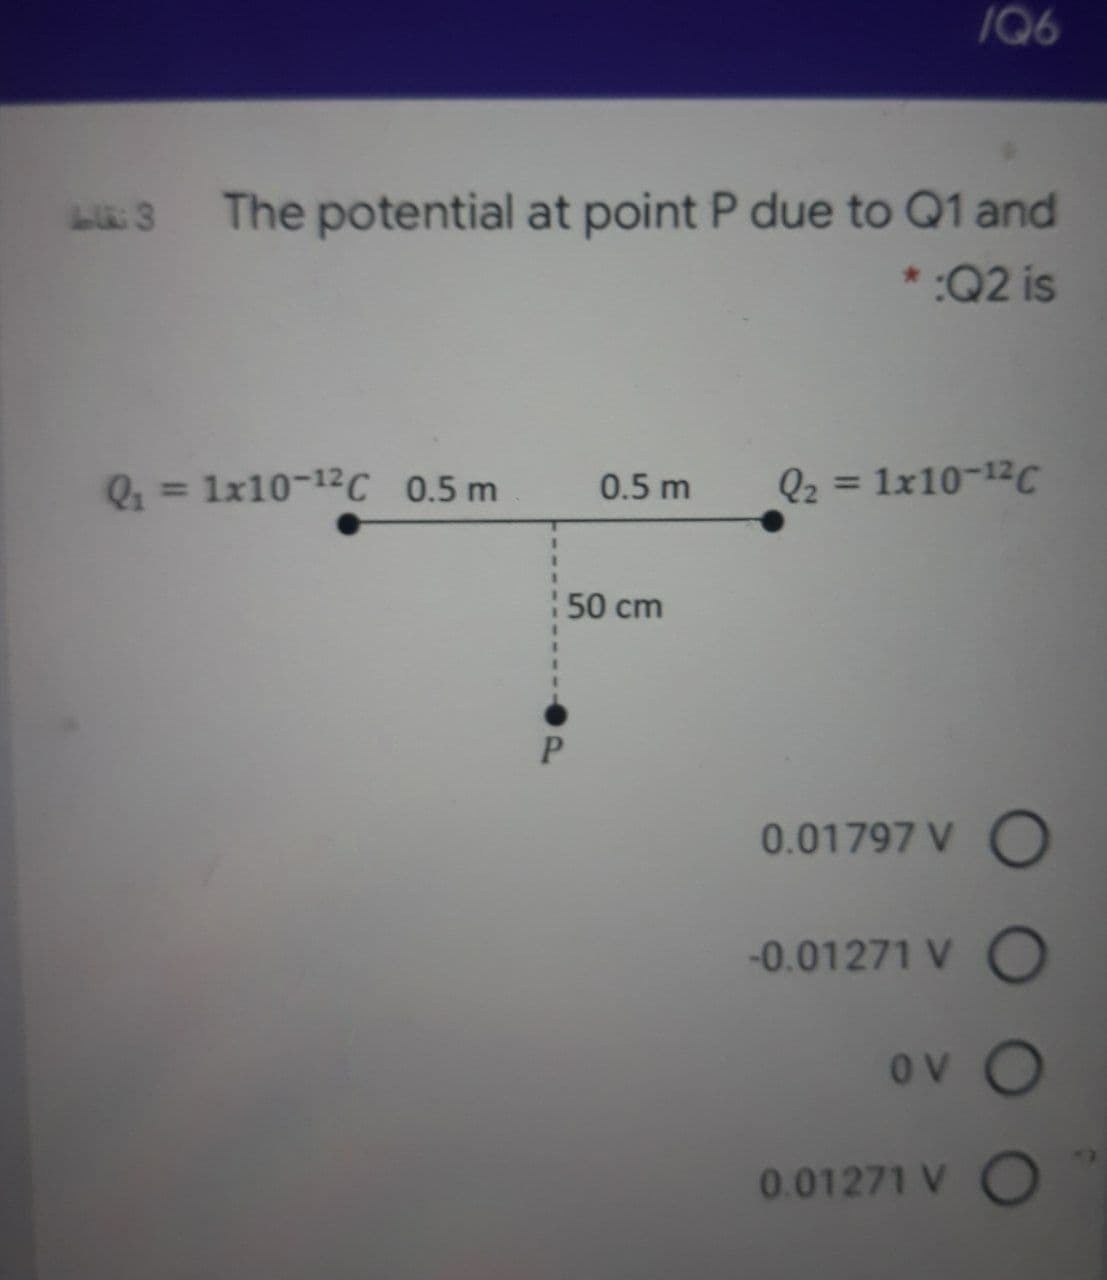 /Q6
The potential at point P due to Q1 and
* :Q2 is
= 1x10-12C 0.5 m
0.5 m
Q2 = 1x10-12C
%3D
50 cm
P.
0.01797 V O
-0.01271 V O
ov O
0.01271 V C
10
